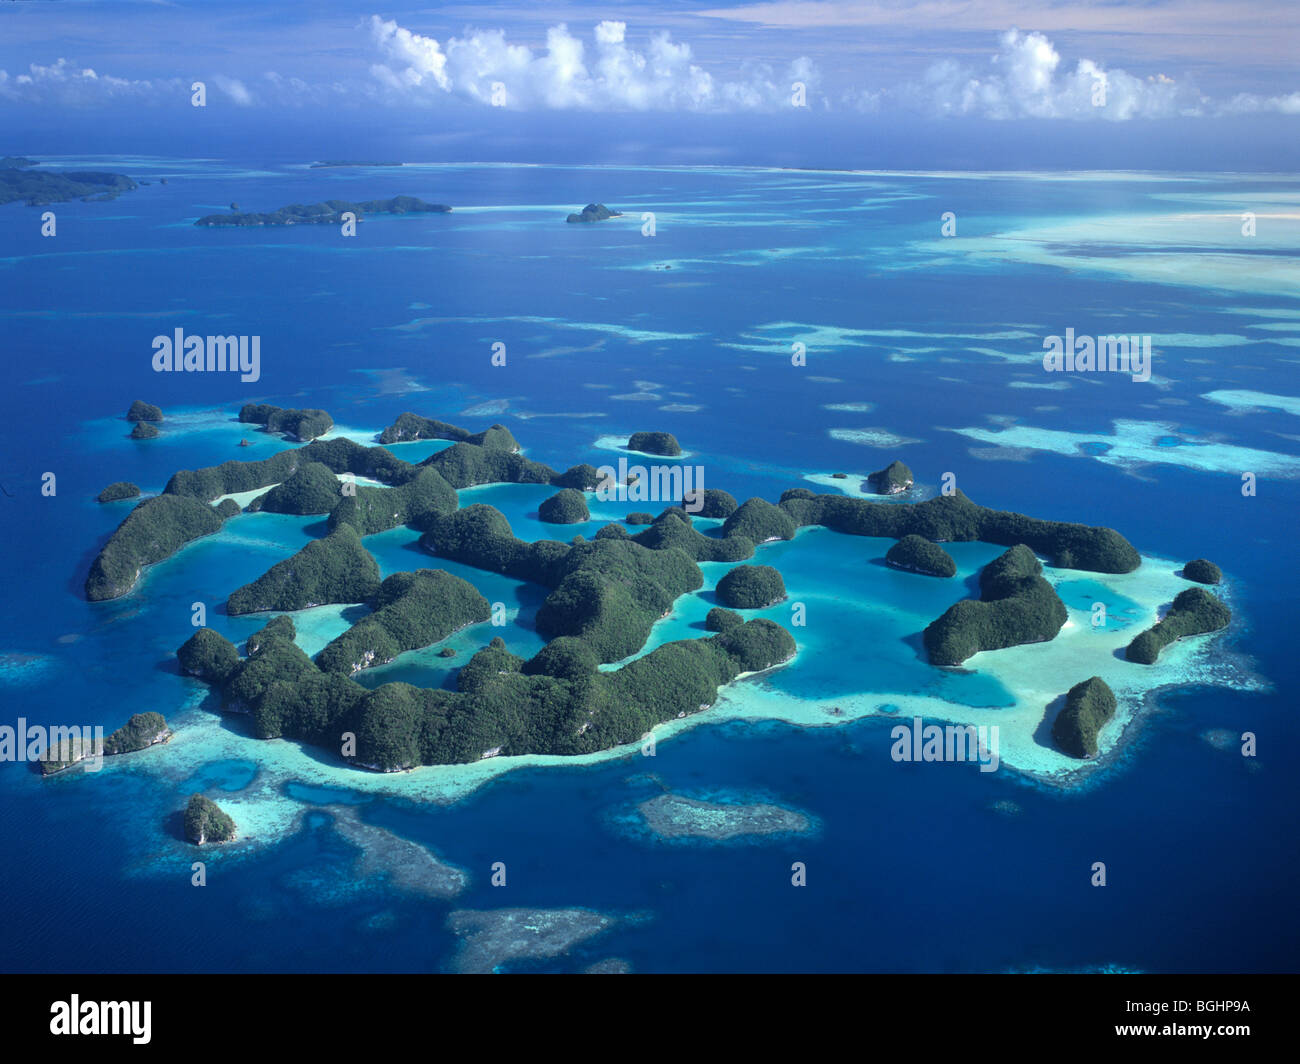 Palau, Micronesia, las Islas Rocosas de Palau, vista aérea de las 70 islas que son referidos como "Ngerukuld en Polinesia' Foto de stock